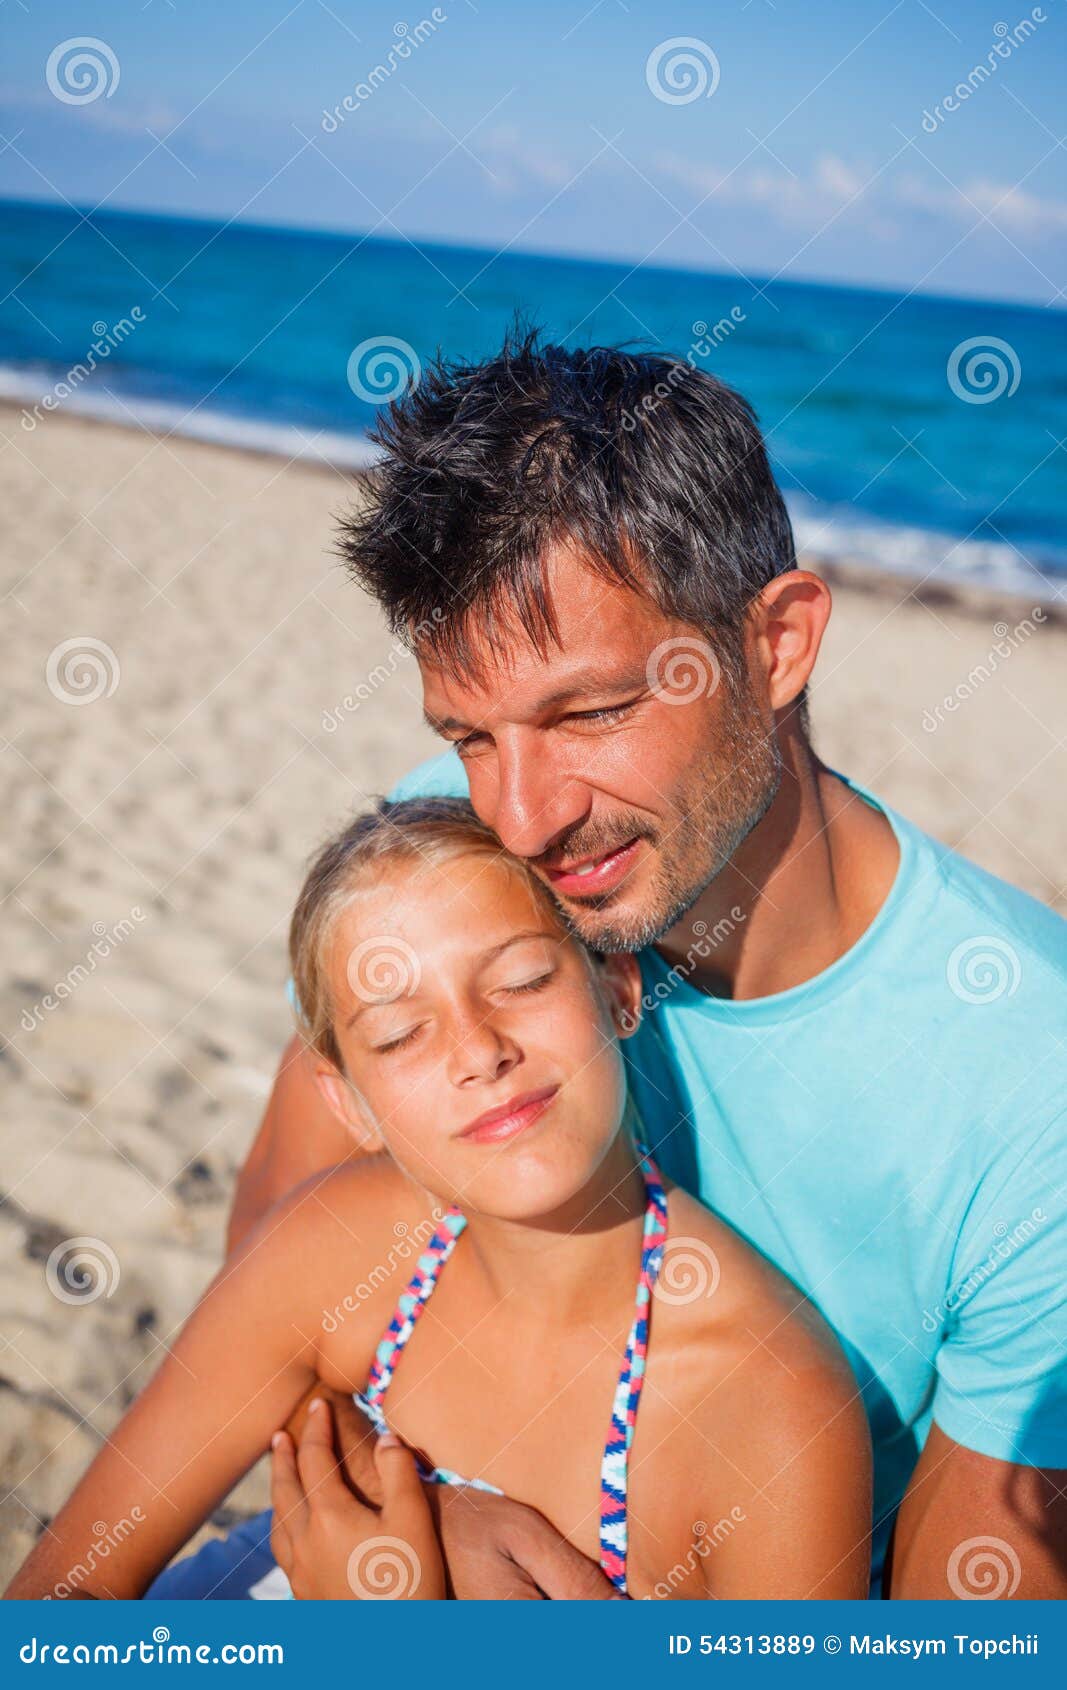 Daddy homemade. Папа с дочерью на пляже фотосессия. Пара с рдочкой на пляже. Дочь подросток пляж. Подросток и папа на пляже.